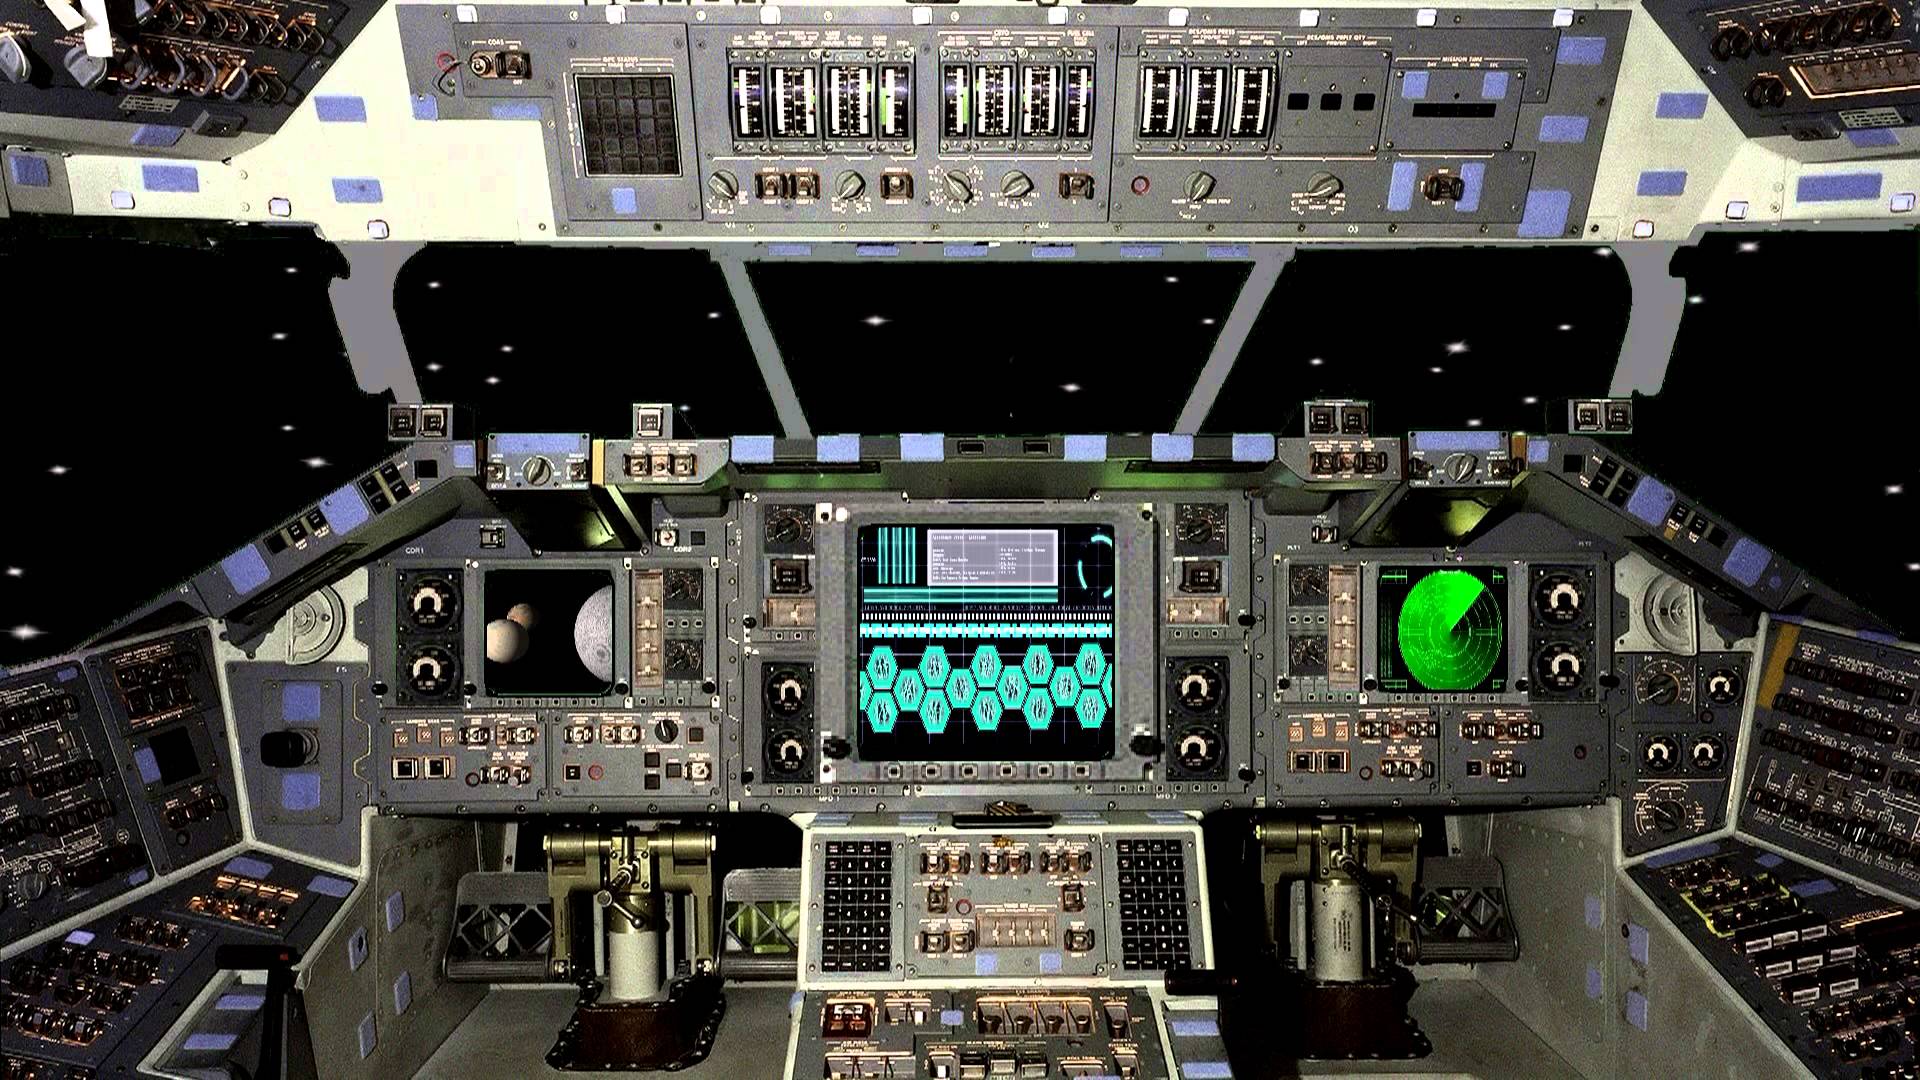 Spaceship Cockpit: Bạn luôn ước mơ trở thành một phi công vũ trụ, điều khiển một chiếc tàu vượt qua vũ trụ và khám phá những hành tinh mới? Hãy cùng nhìn vào hình ảnh trong buồng lái của một tàu vũ trụ và trải nghiệm cảm giác được làm chủ chính mình trong không gian bao la.